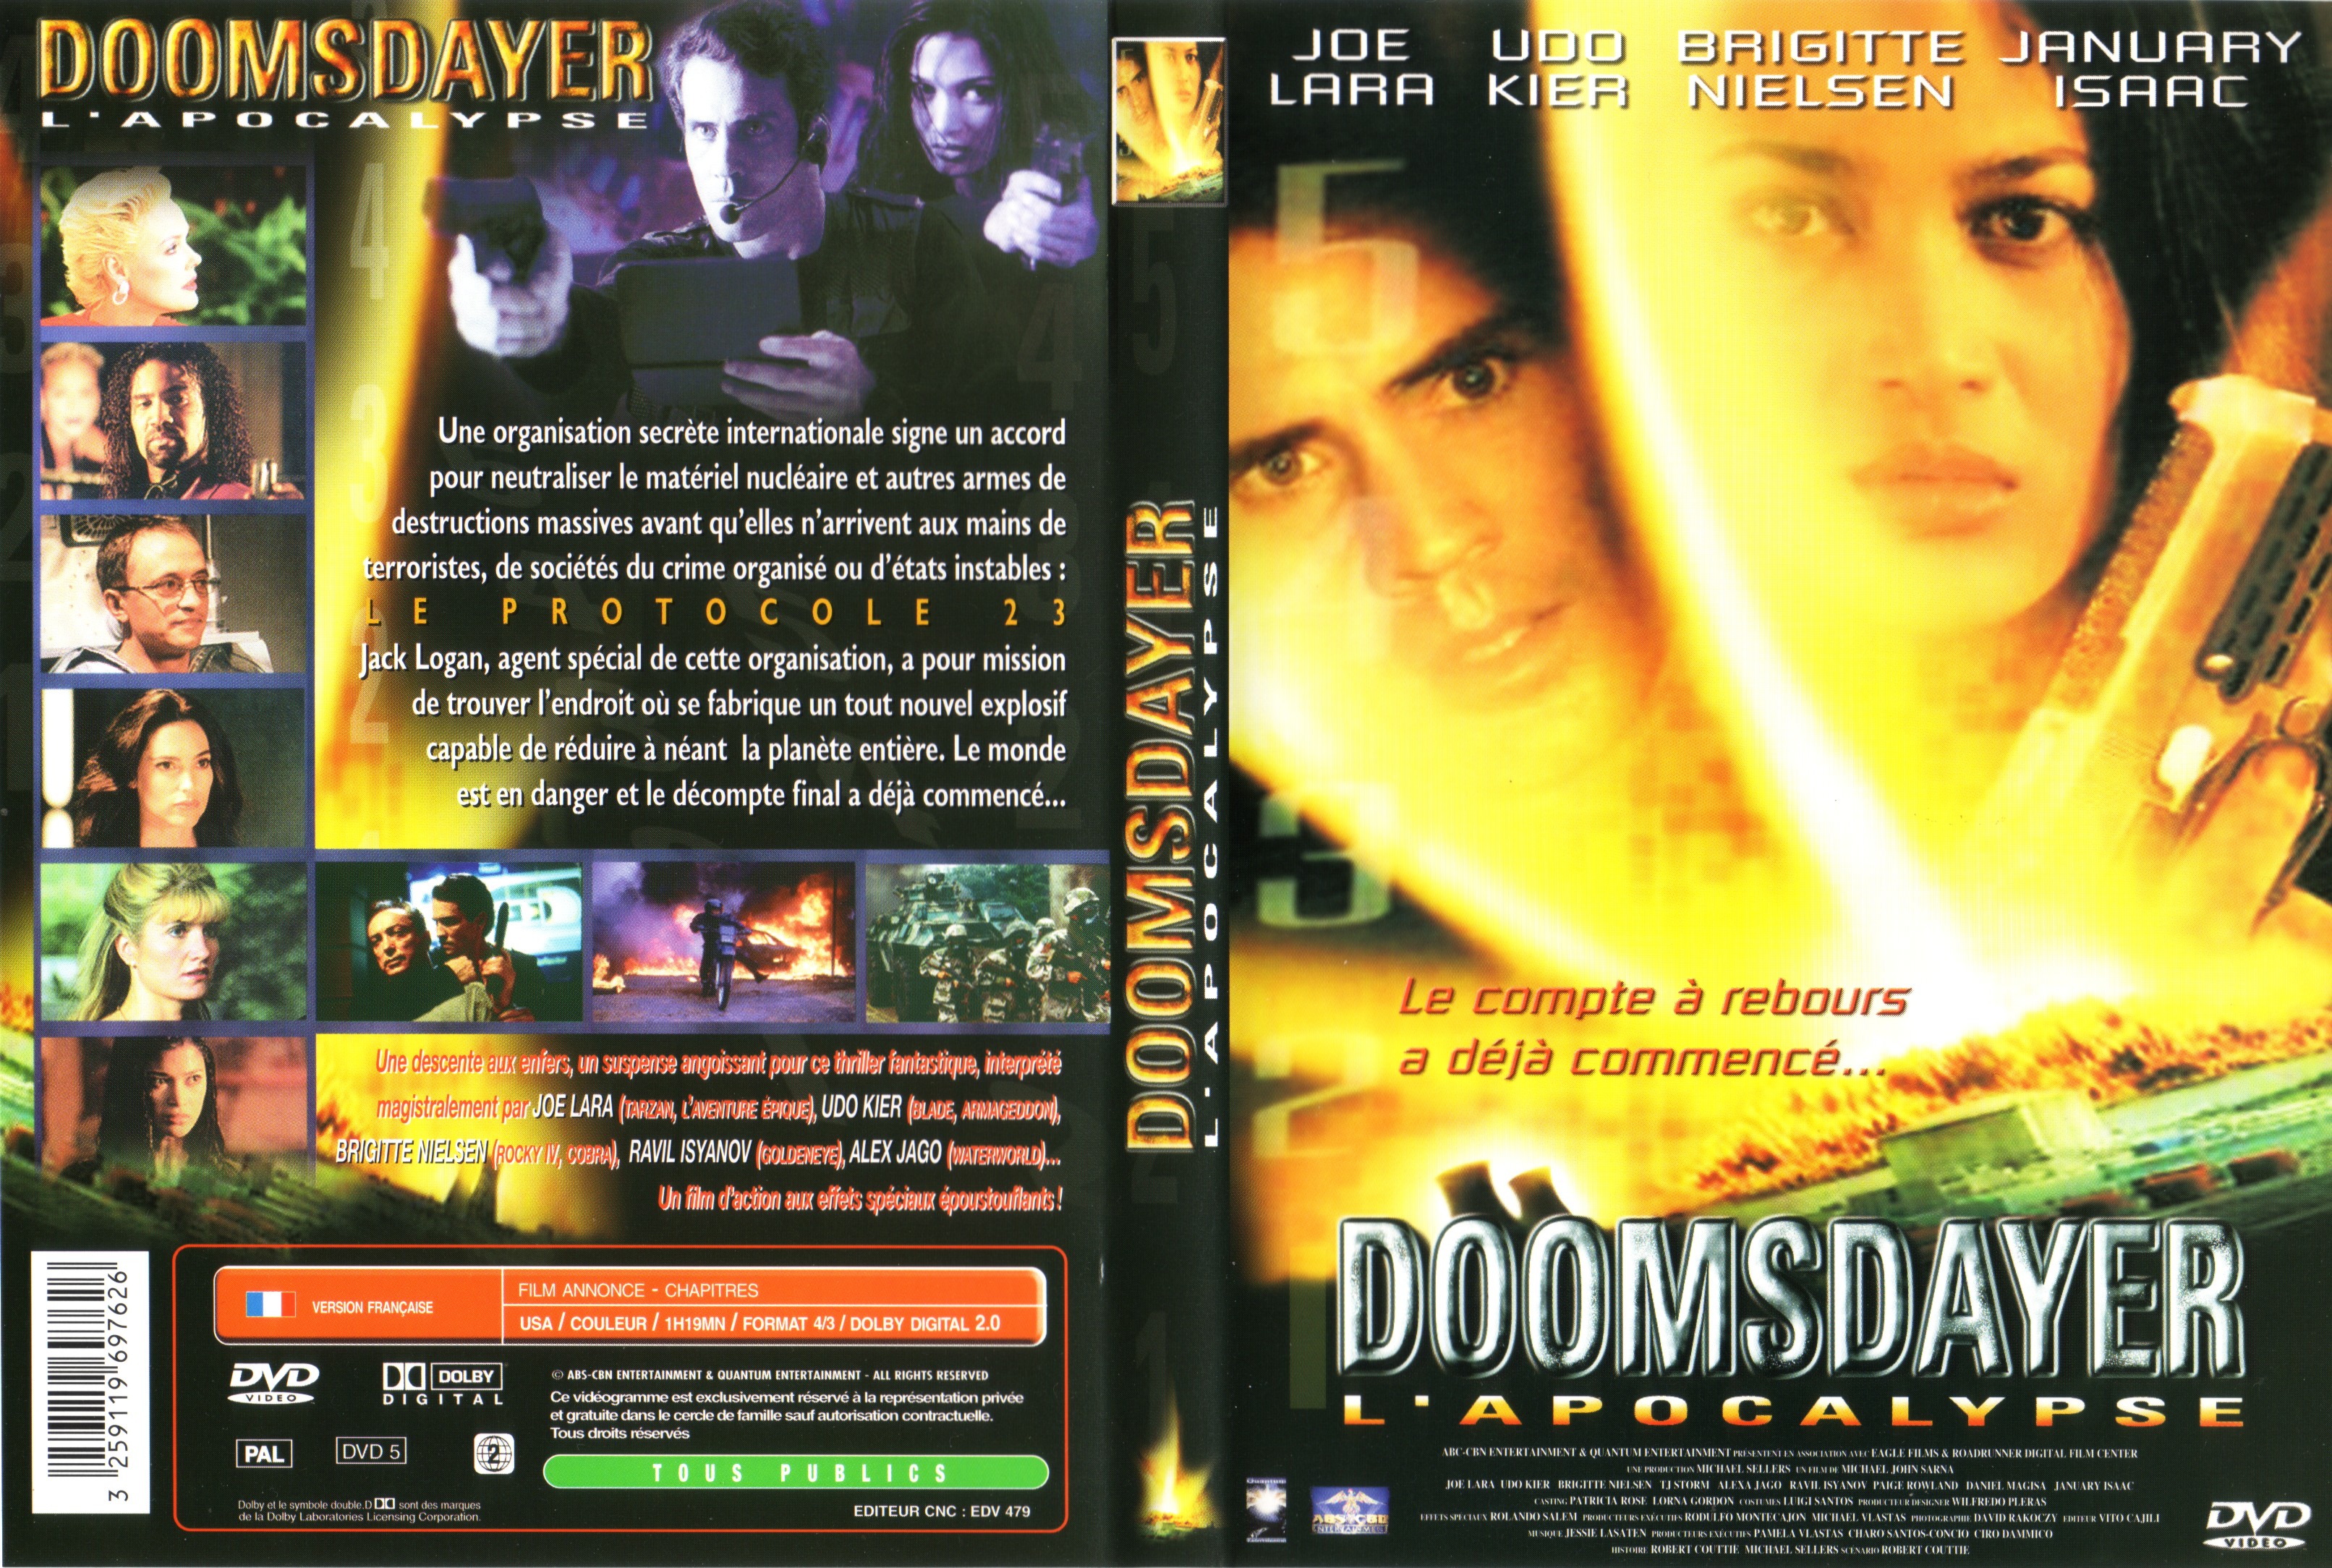 Jaquette DVD Doomsdayer v2